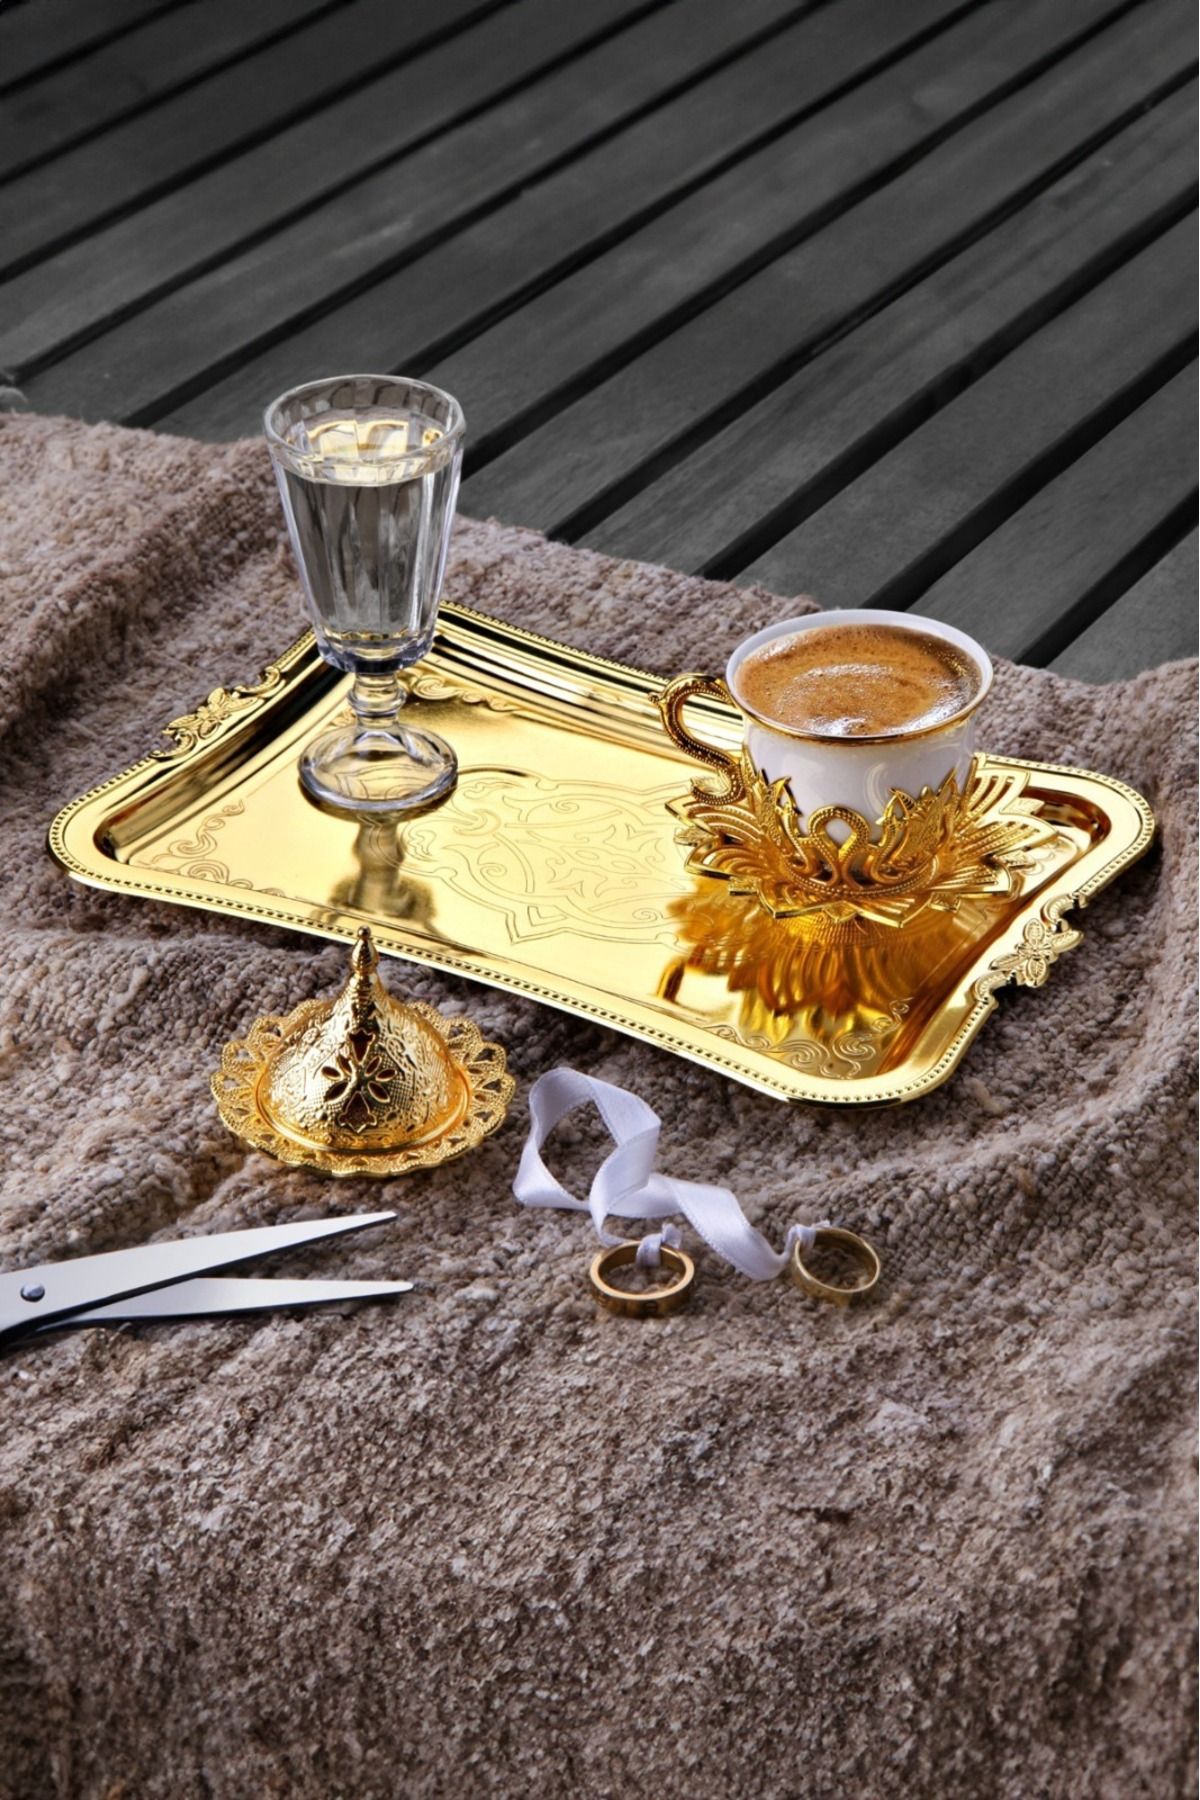 WuuQ Lüx Tek Kişilik Porselen Türk Kahvesi Takımı Set -Gelen Damat Lokumluklu veya Şekerlikli Gold Renk